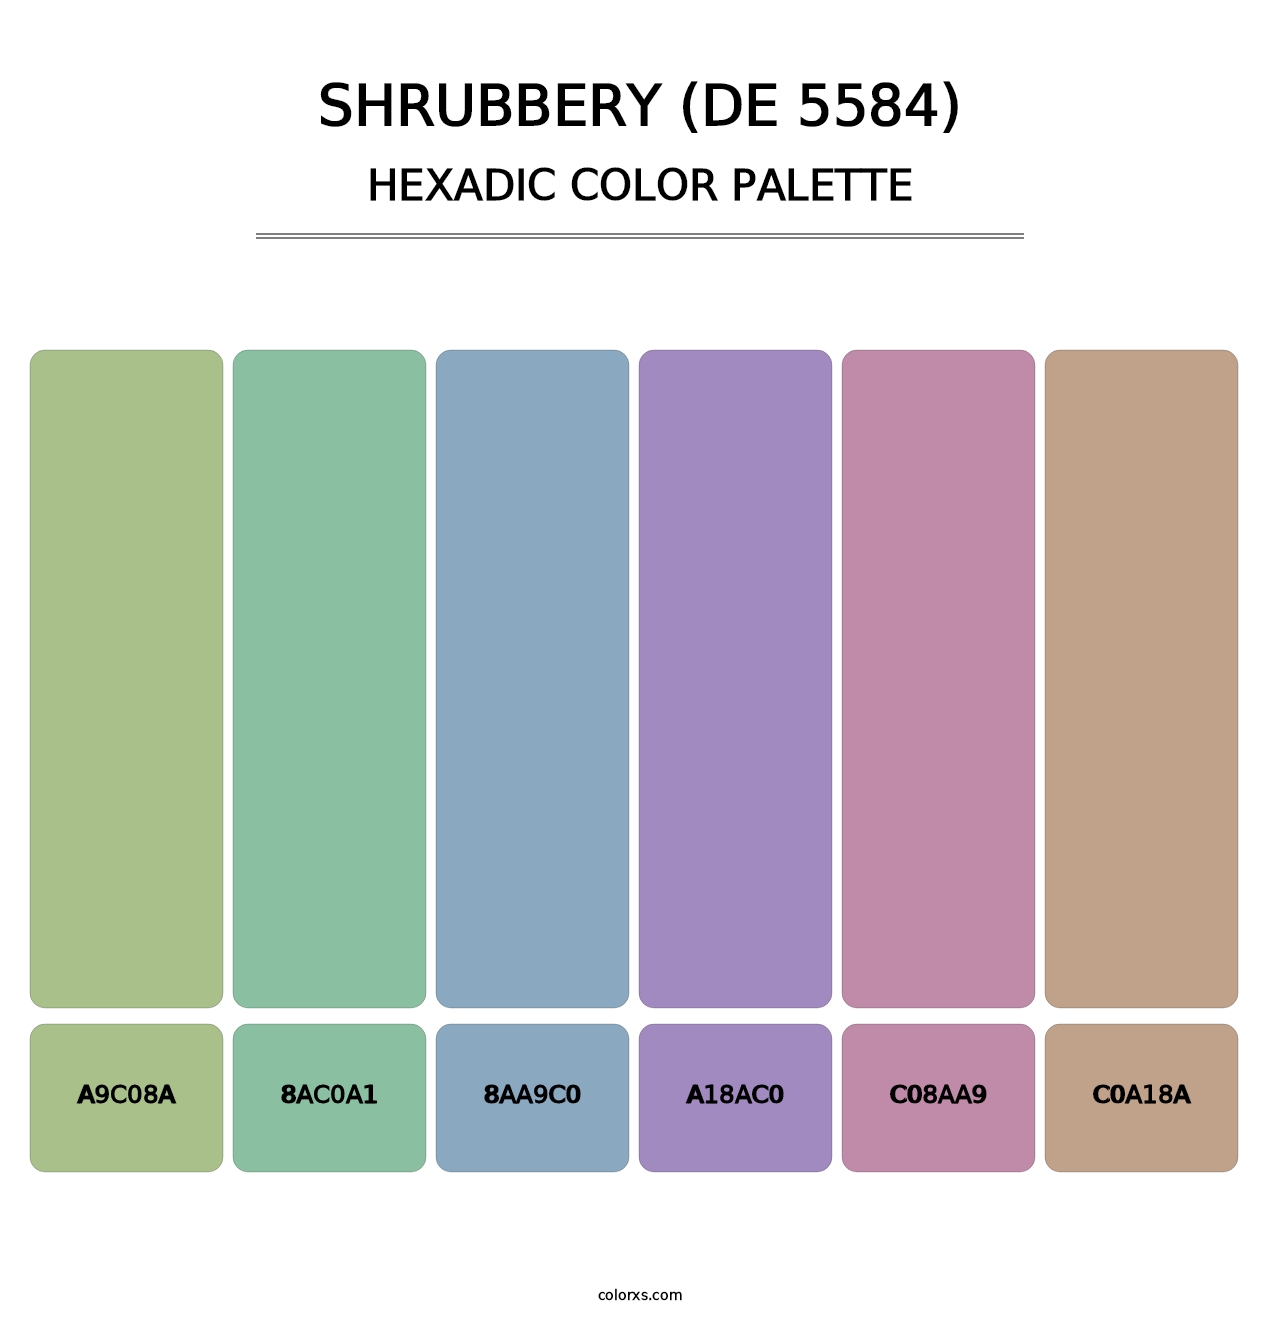 Shrubbery (DE 5584) - Hexadic Color Palette